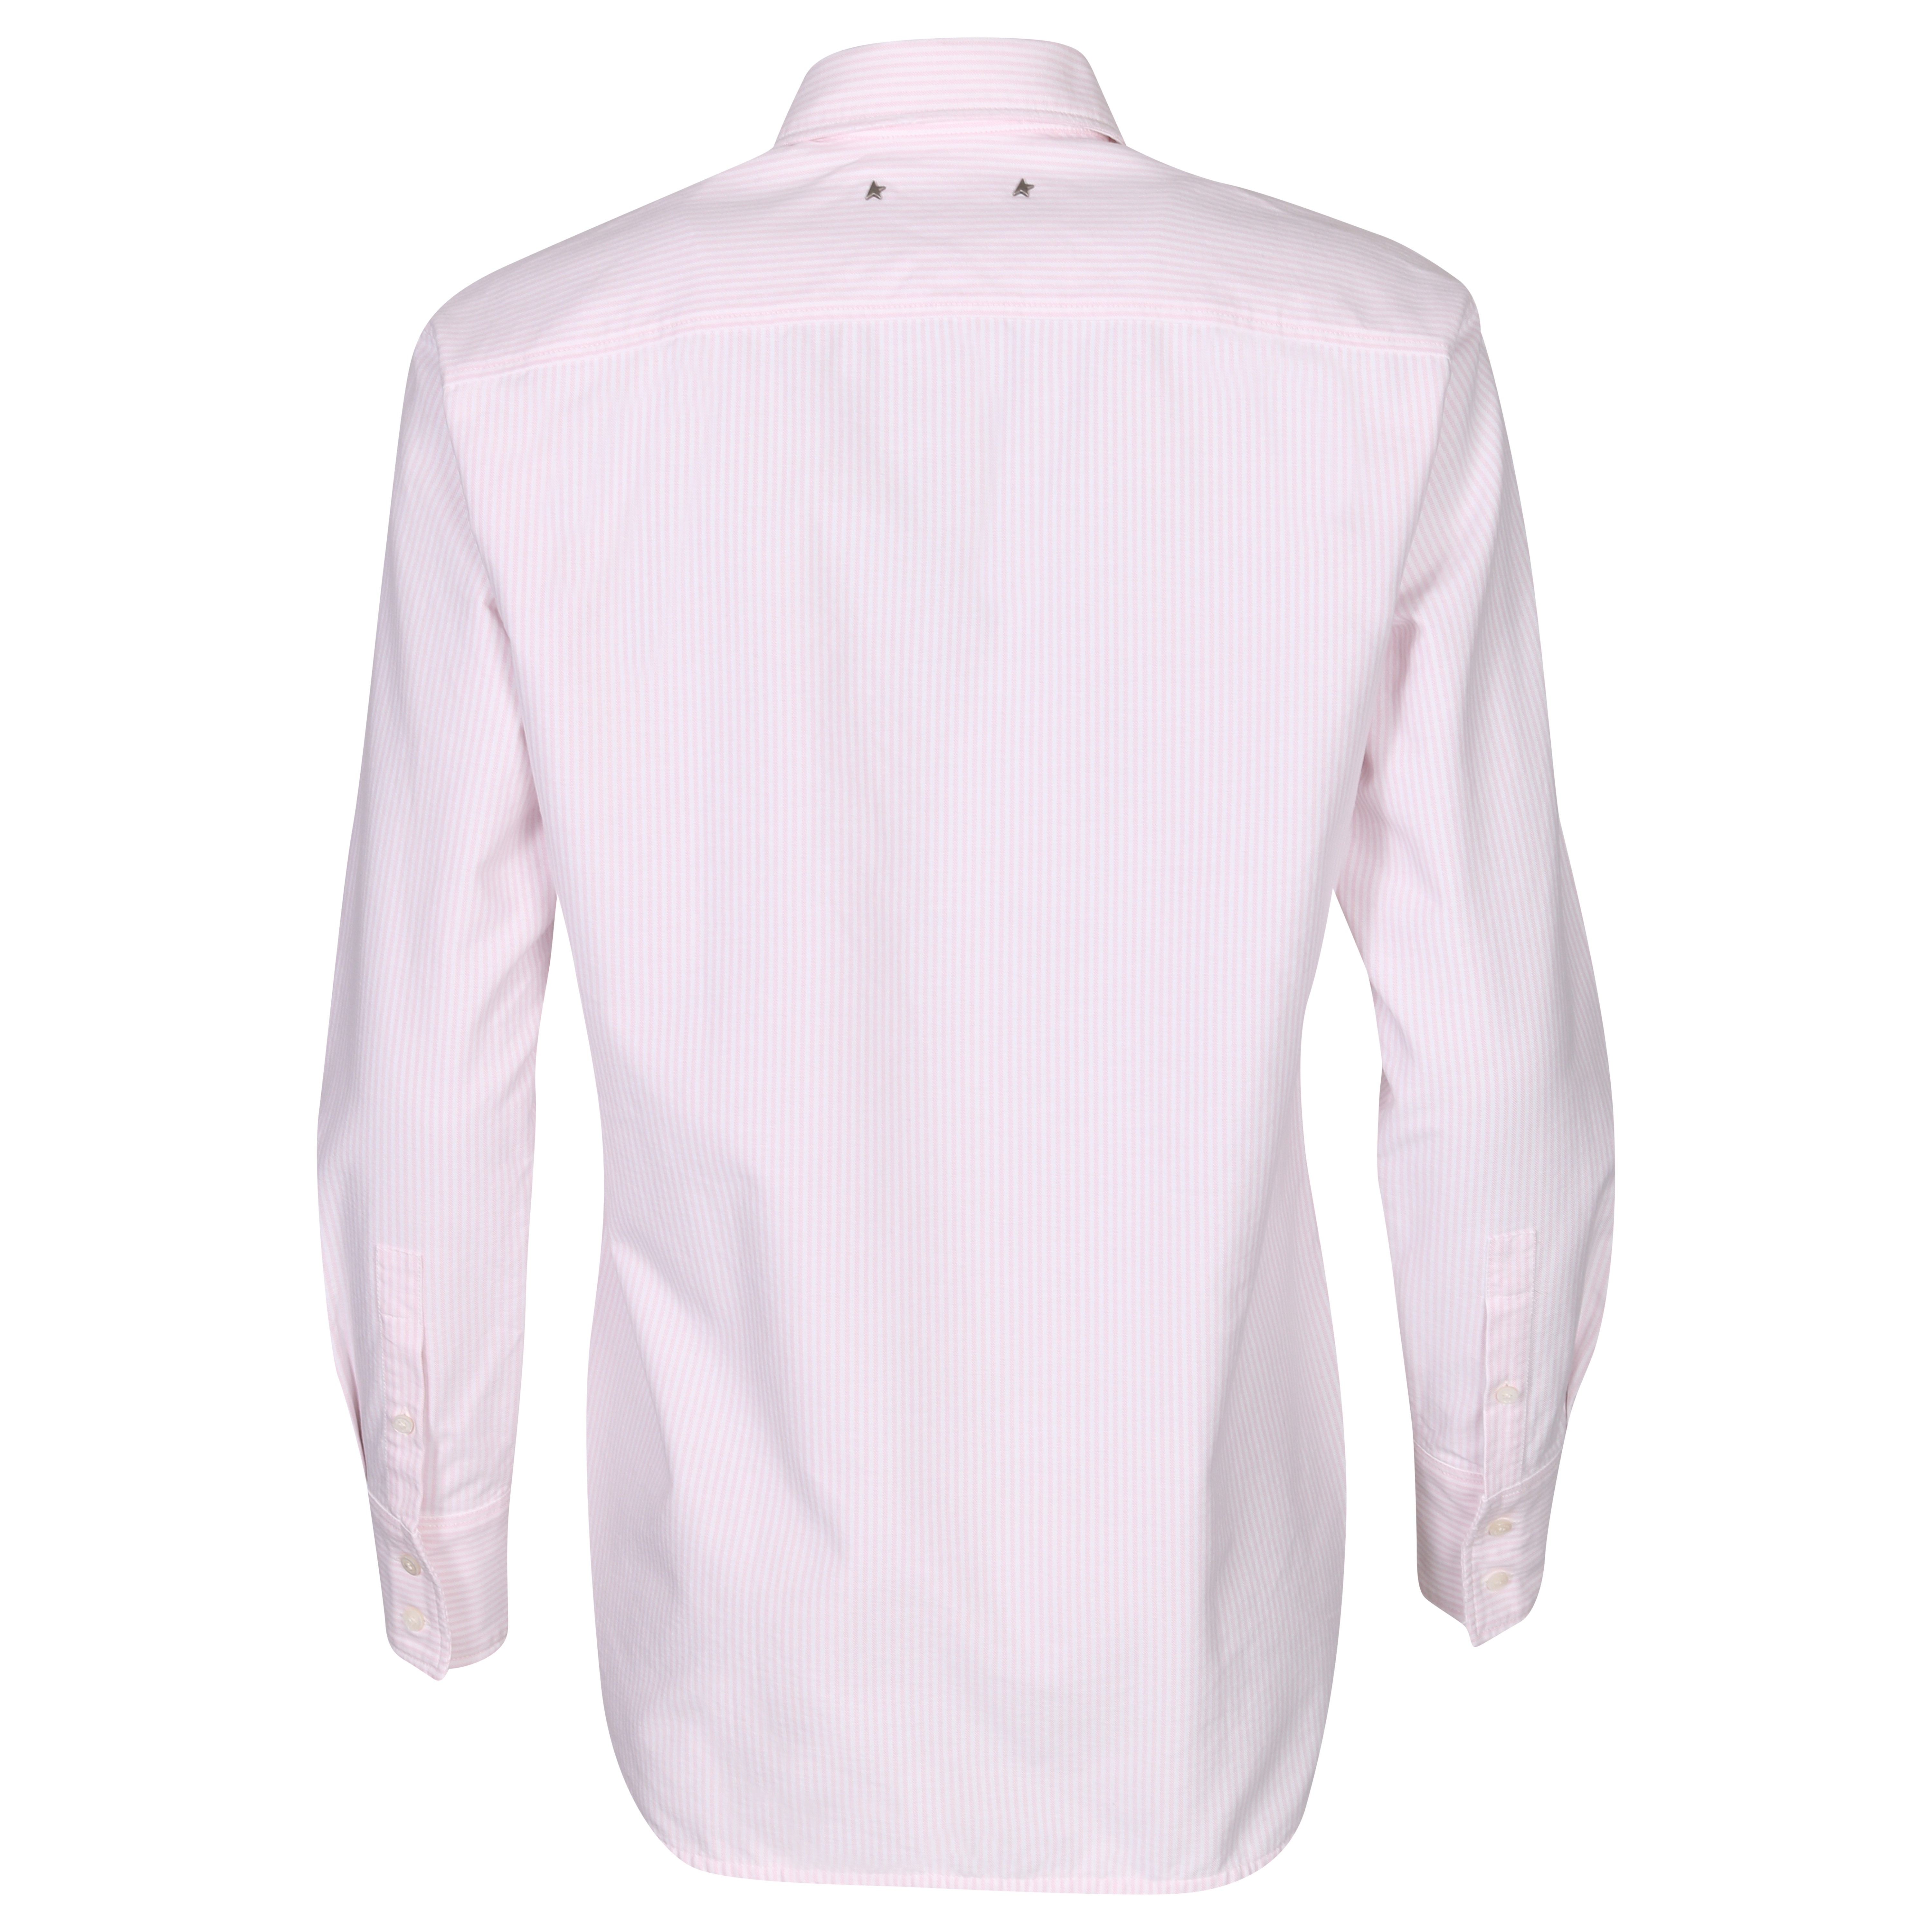 Golden Goose Journey Shirt Boyfriend Striped Oxford Cotton Pink/White M